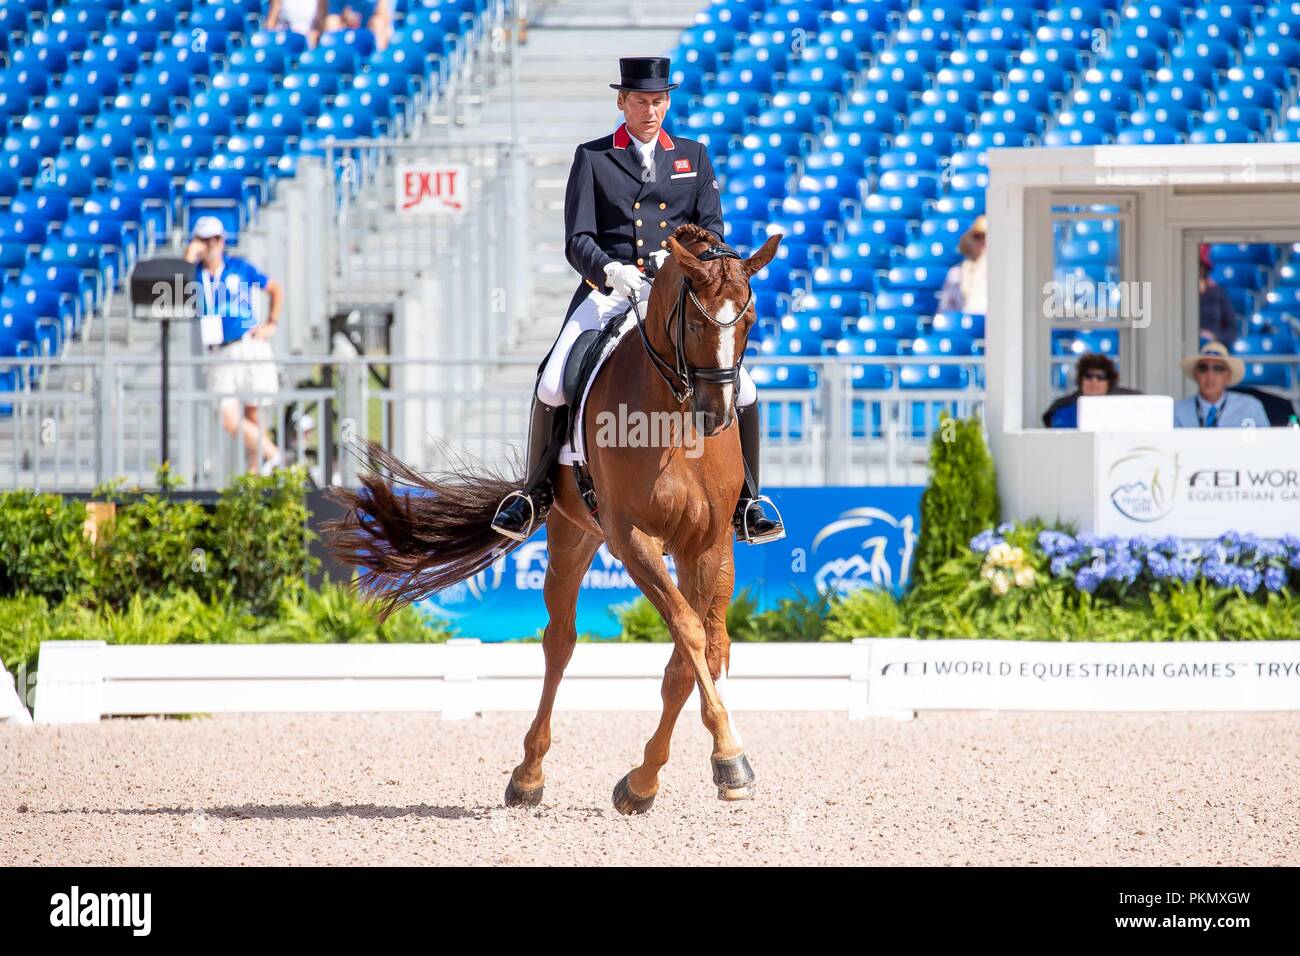 Emile Faurie. Dono di Maggio. Dressage.Grand Prix Special. Day 4. World Equestrian Games. WEG 2018 Tryon. North Carolina. USA. 14/09/2018. Stock Photo